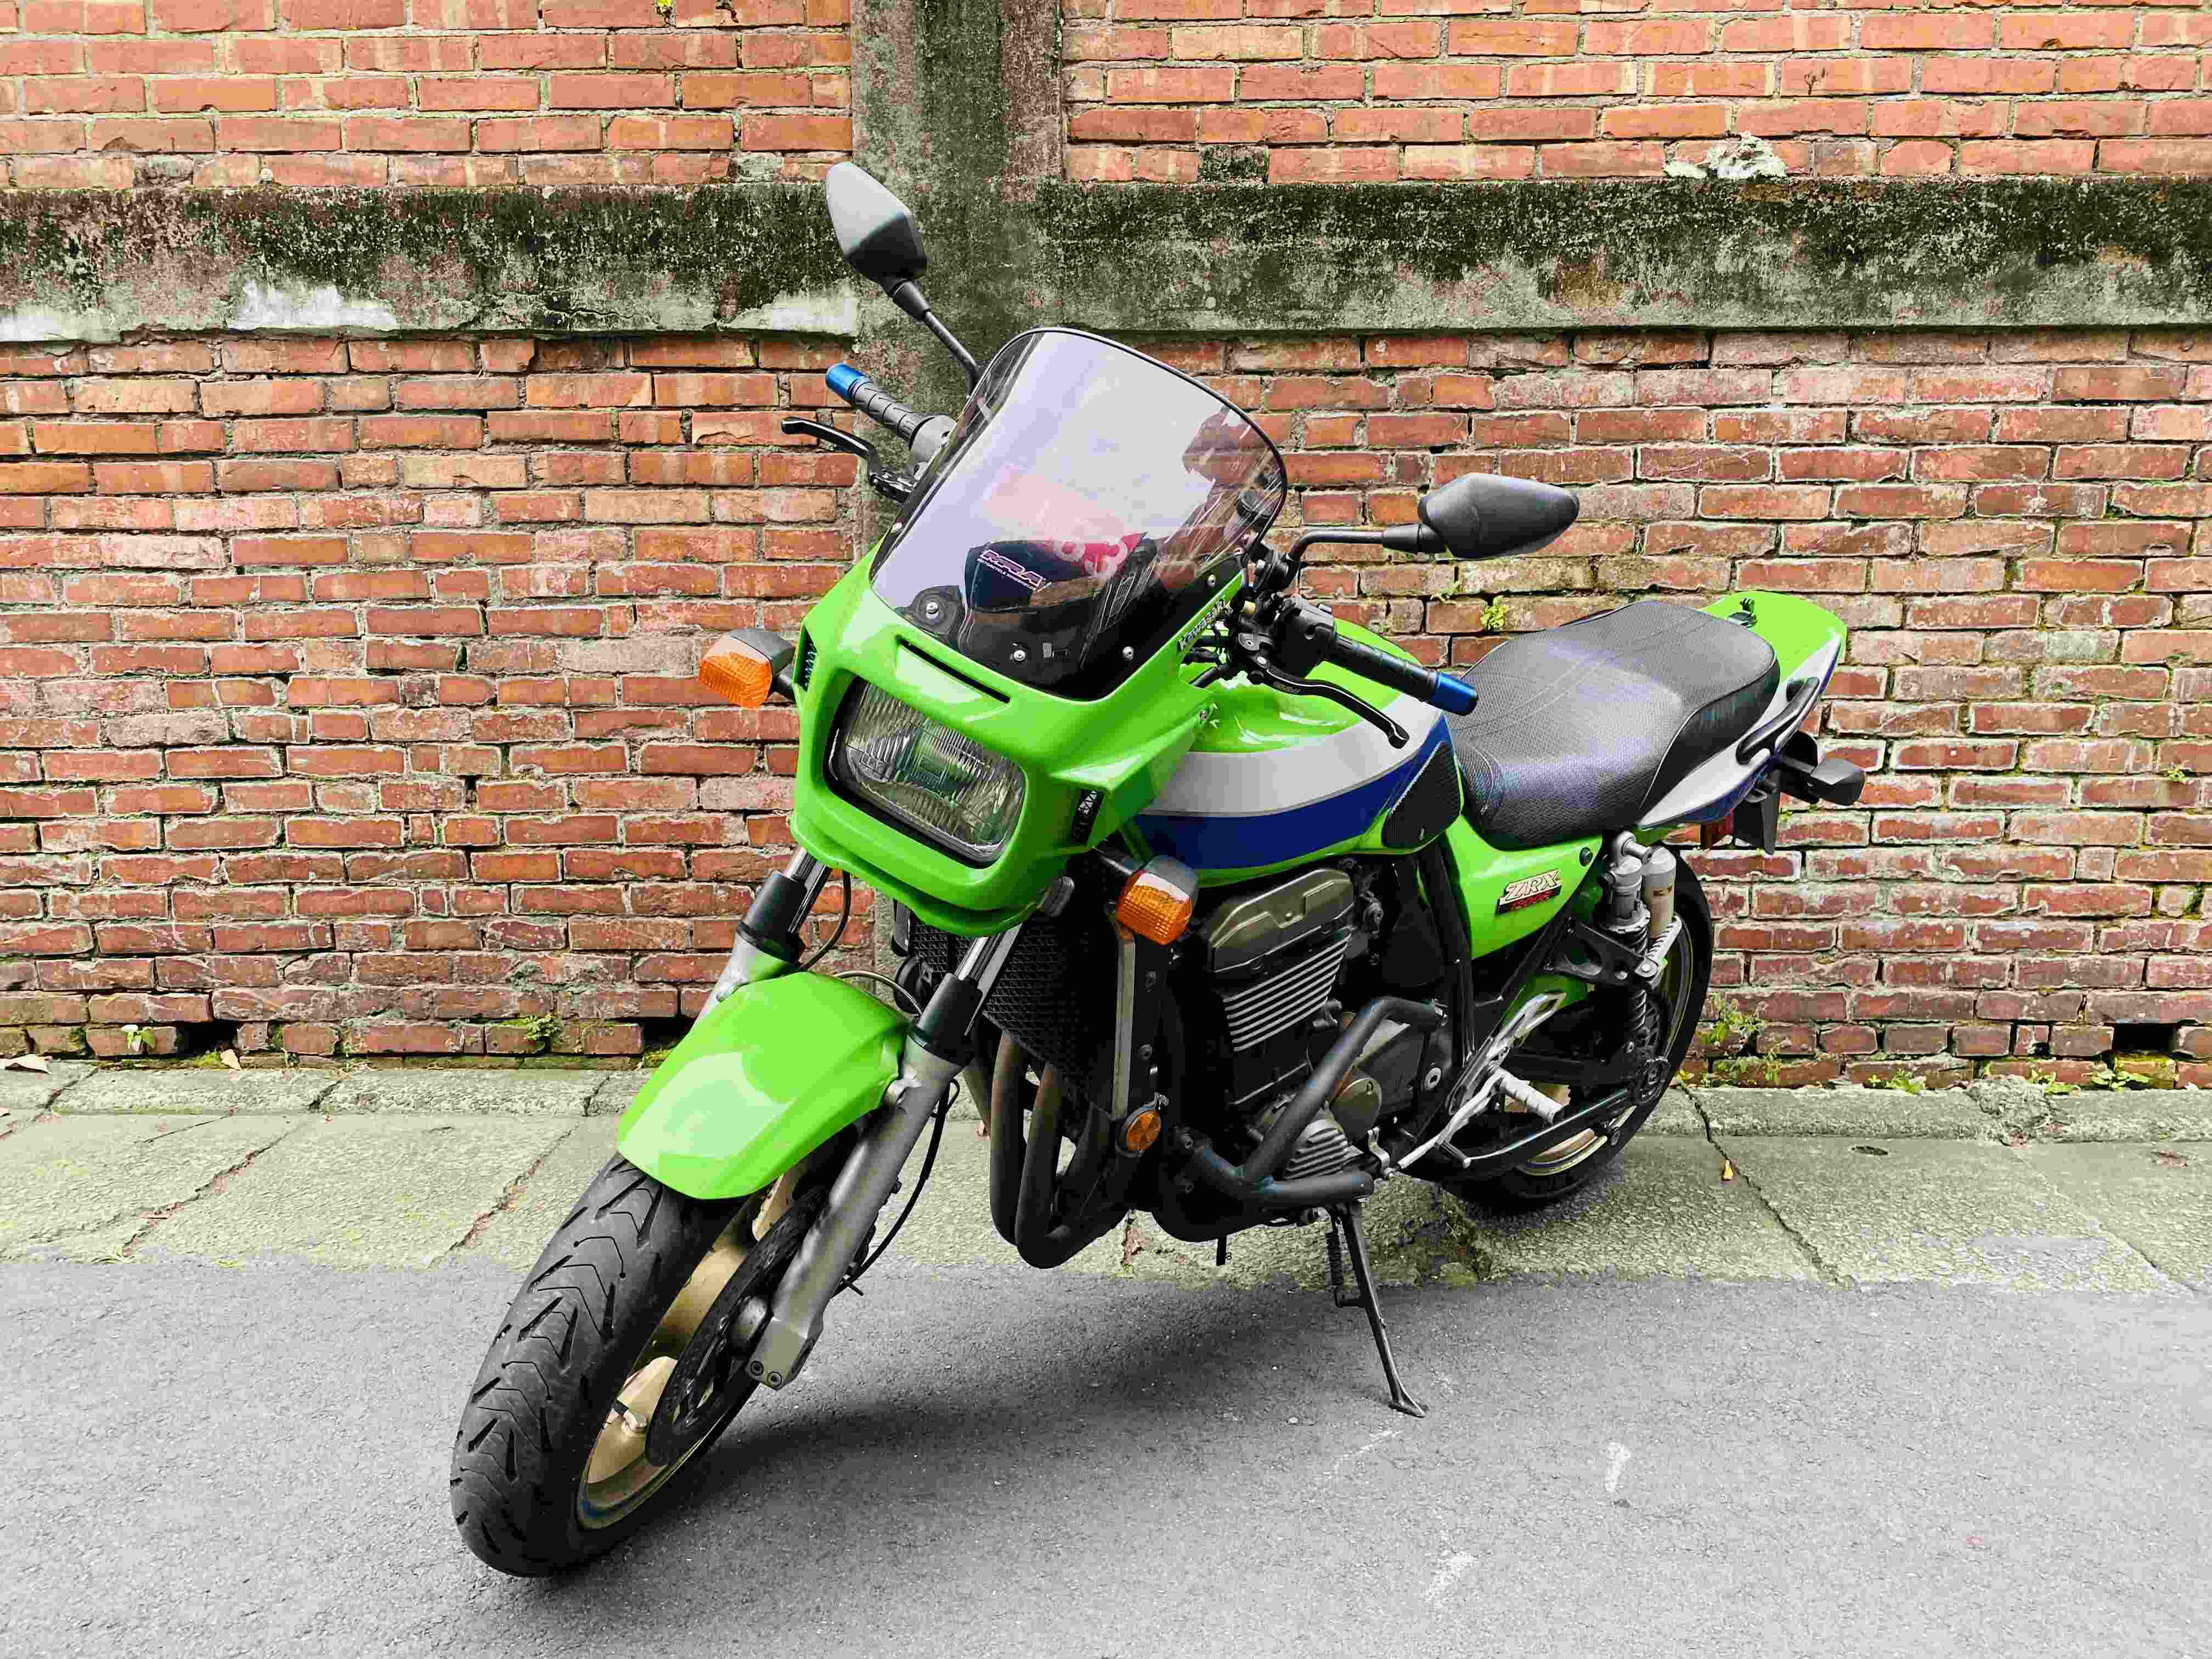 【輪泰車業】KAWASAKI ZRX1200 - 「Webike-摩托車市」 Kawasaki ZRX1200 2008 男子漢1200 經典四大街車